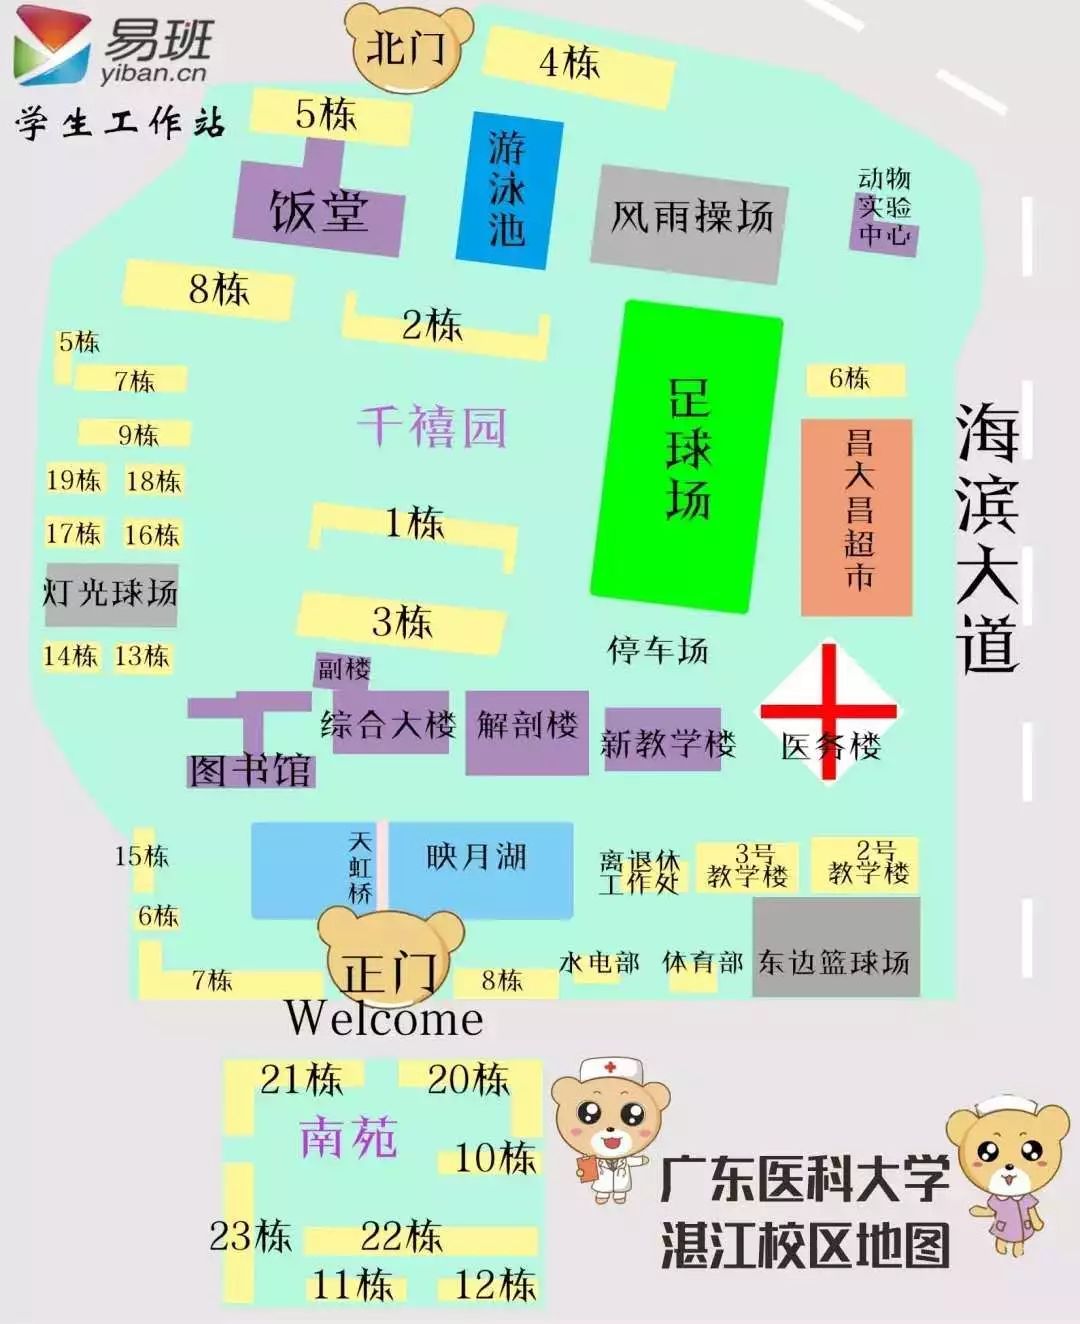 广东医科大学地图图片